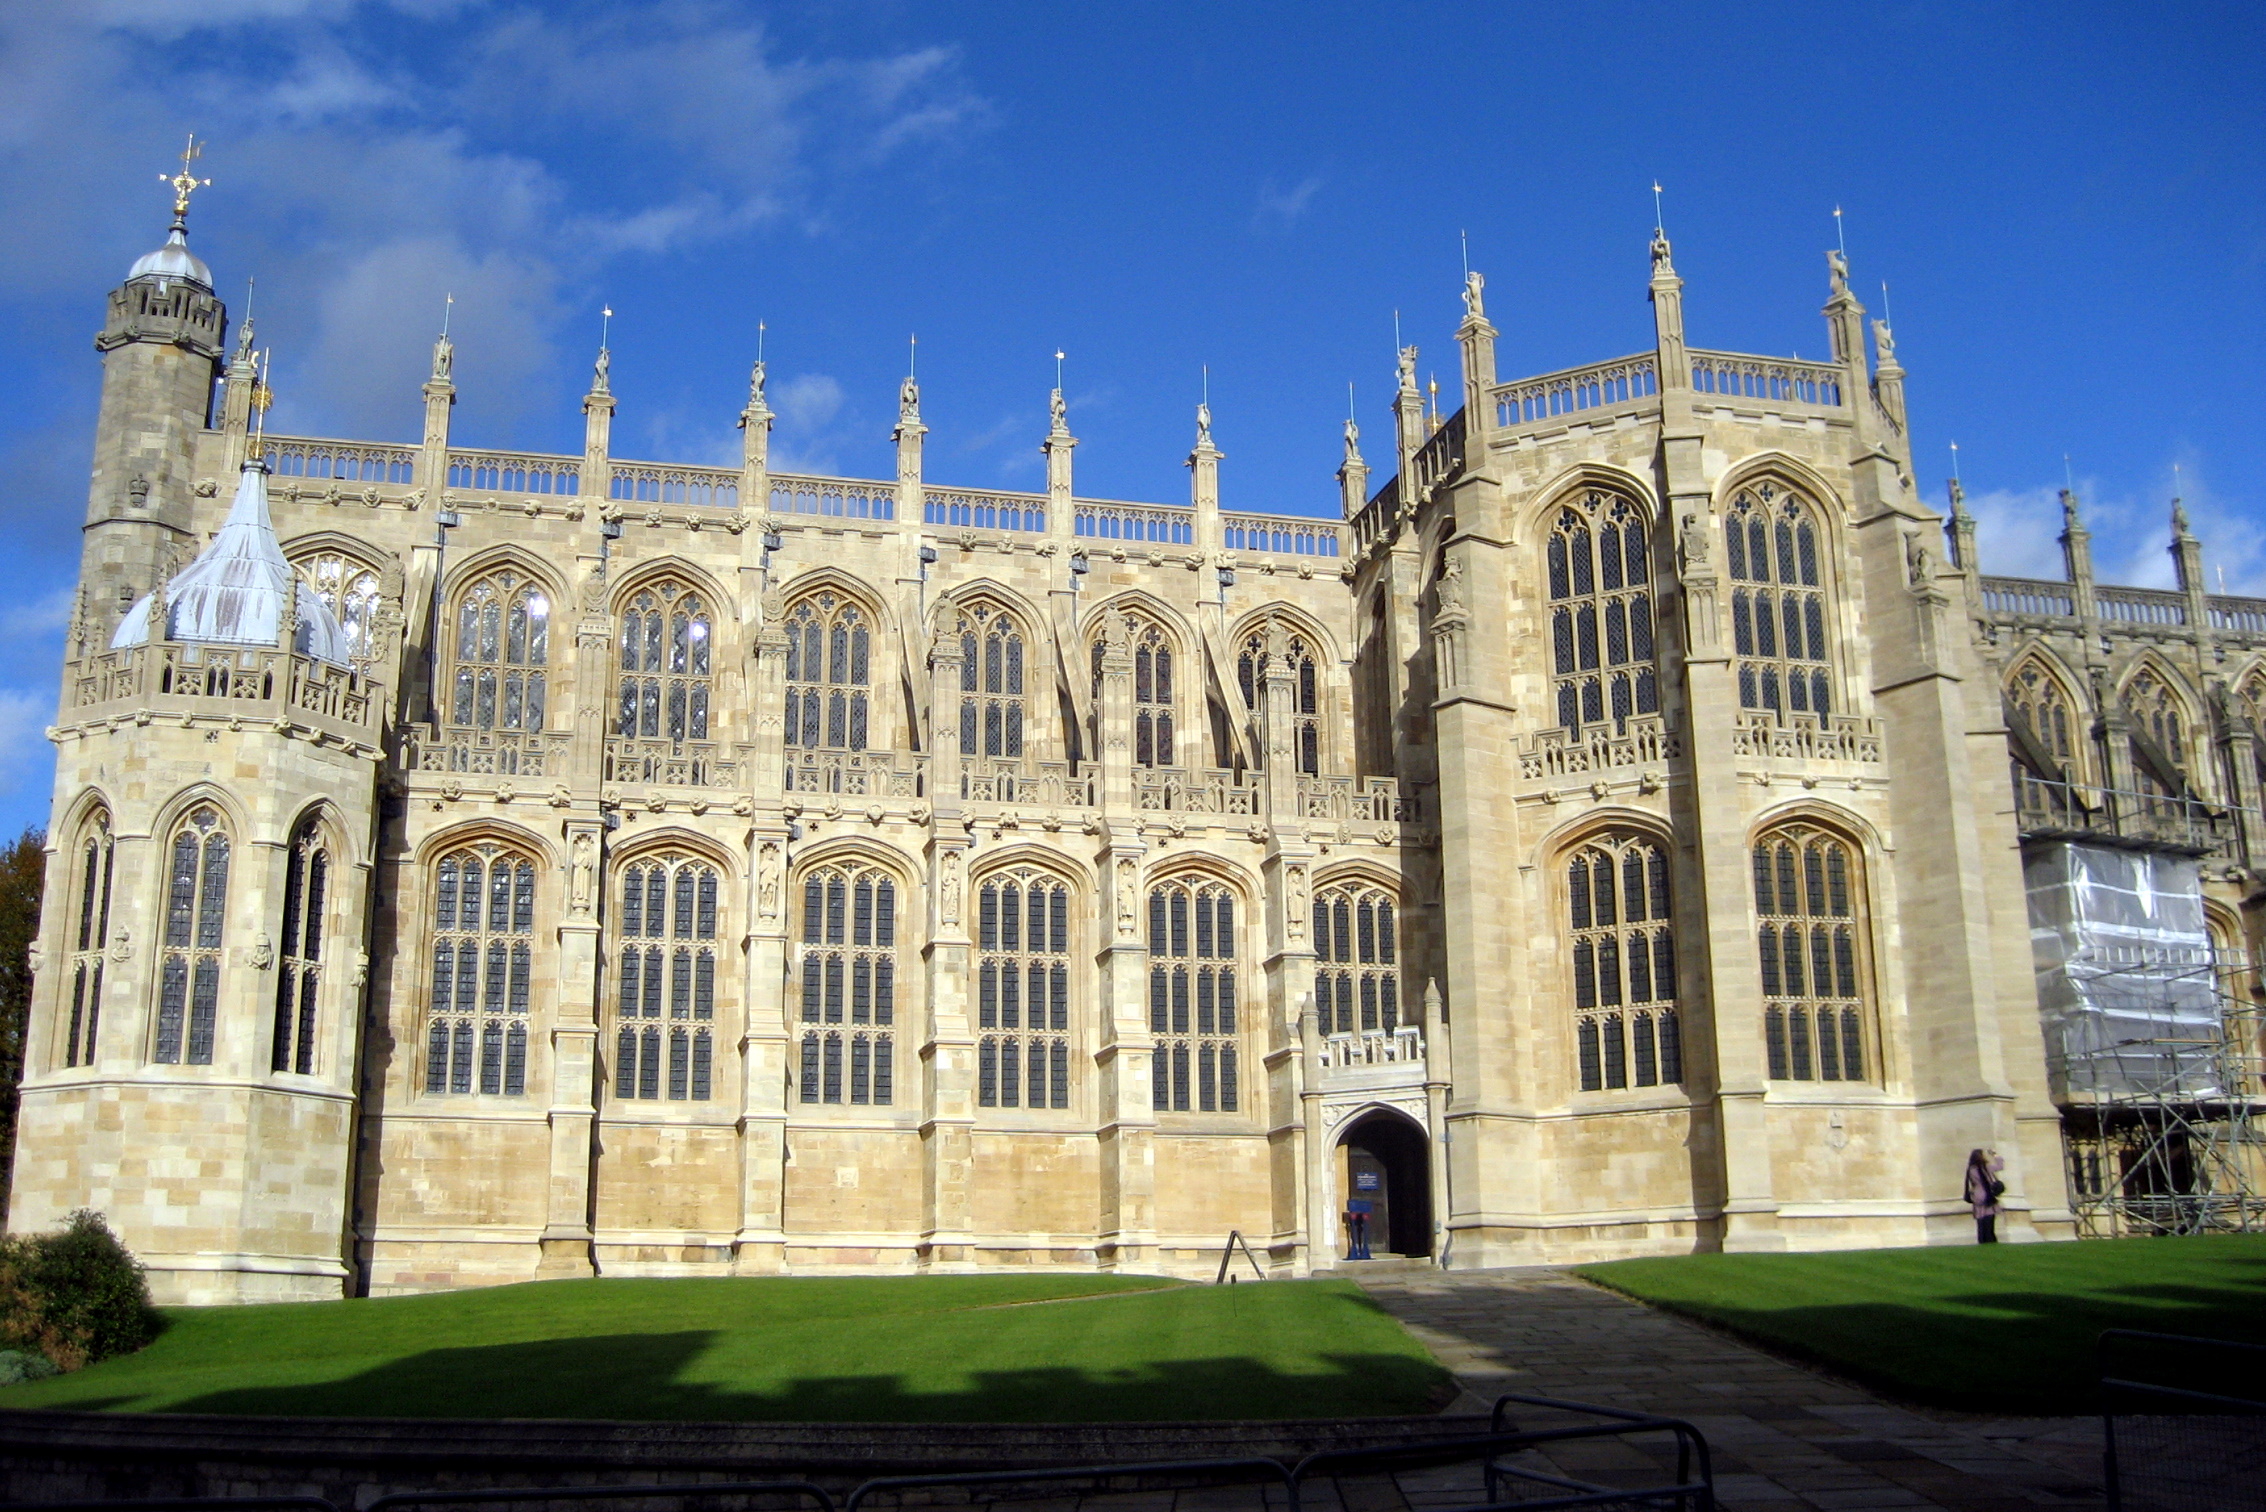 UK - Windsor - Windsor Castle: St. George's Chapel